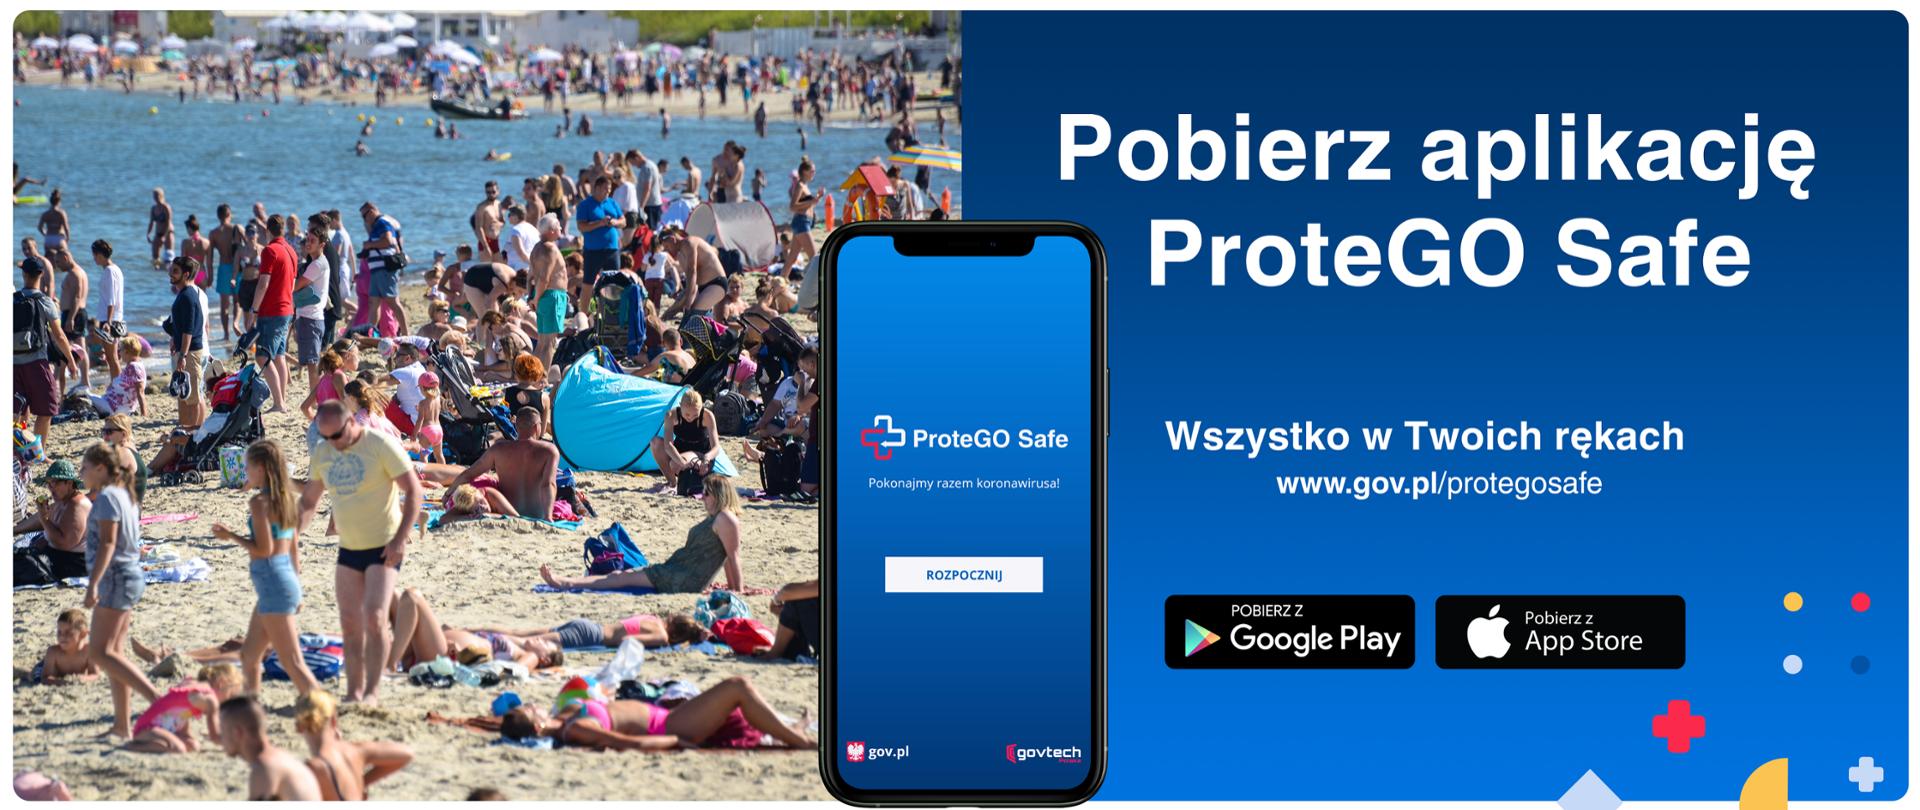 Grafika. Ludzie wypoczywający na plaży. Obok smartfon z włączoną aplikacją ProteGo Safe i napis: Pobierz aplikację ProteGo Safe. Wszystko w Twoich rękach www.gov.pl/protegosafe.